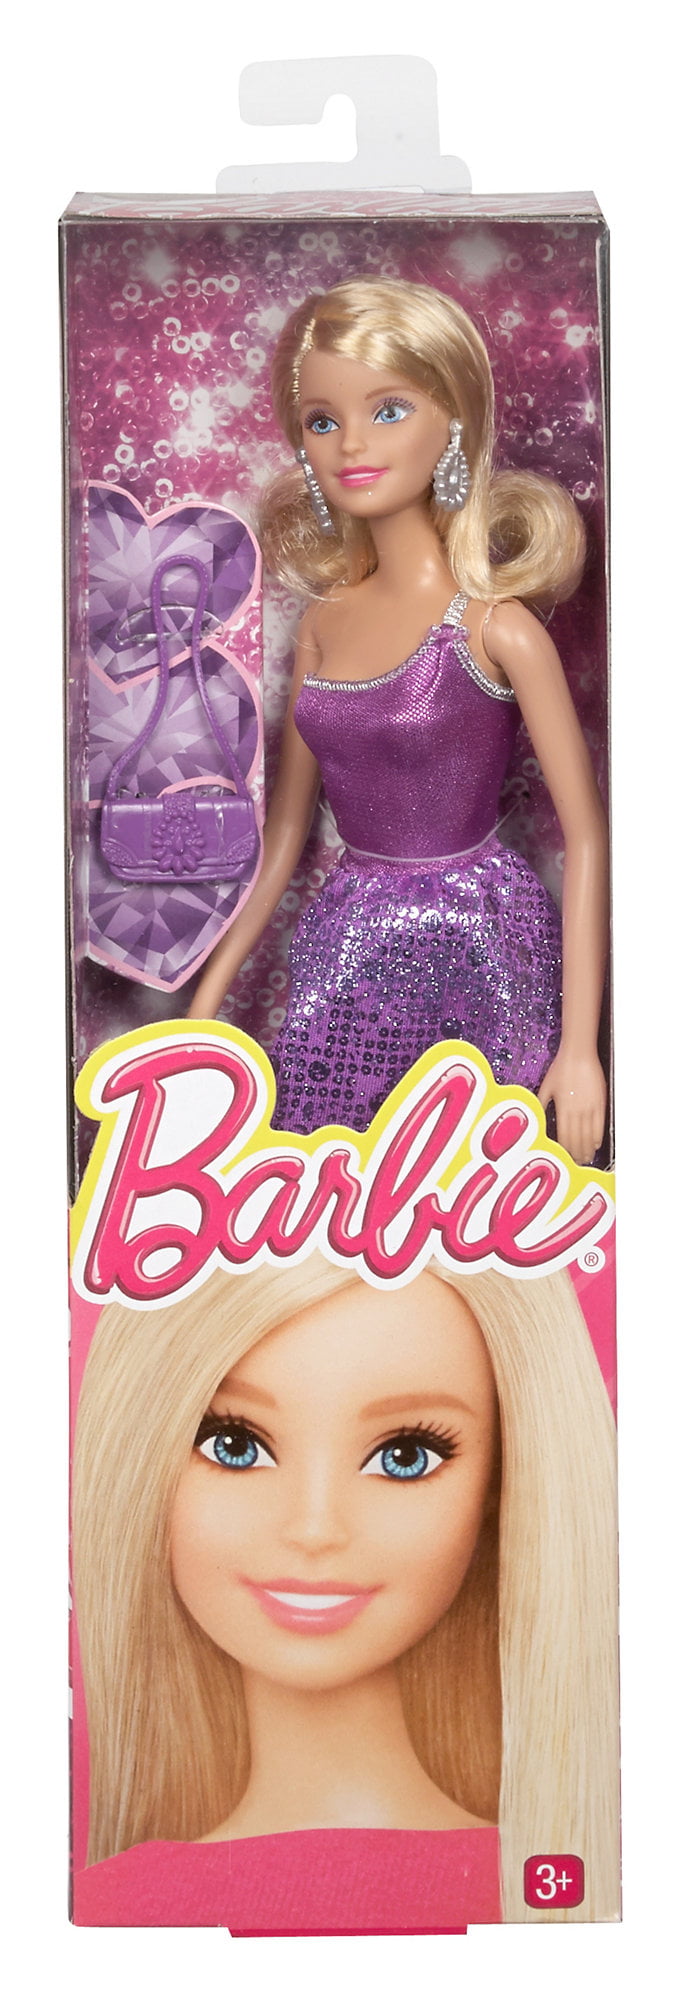 Mattel Barbie Glitz Purple Party Dress Doll 3 BCN33 for sale online 